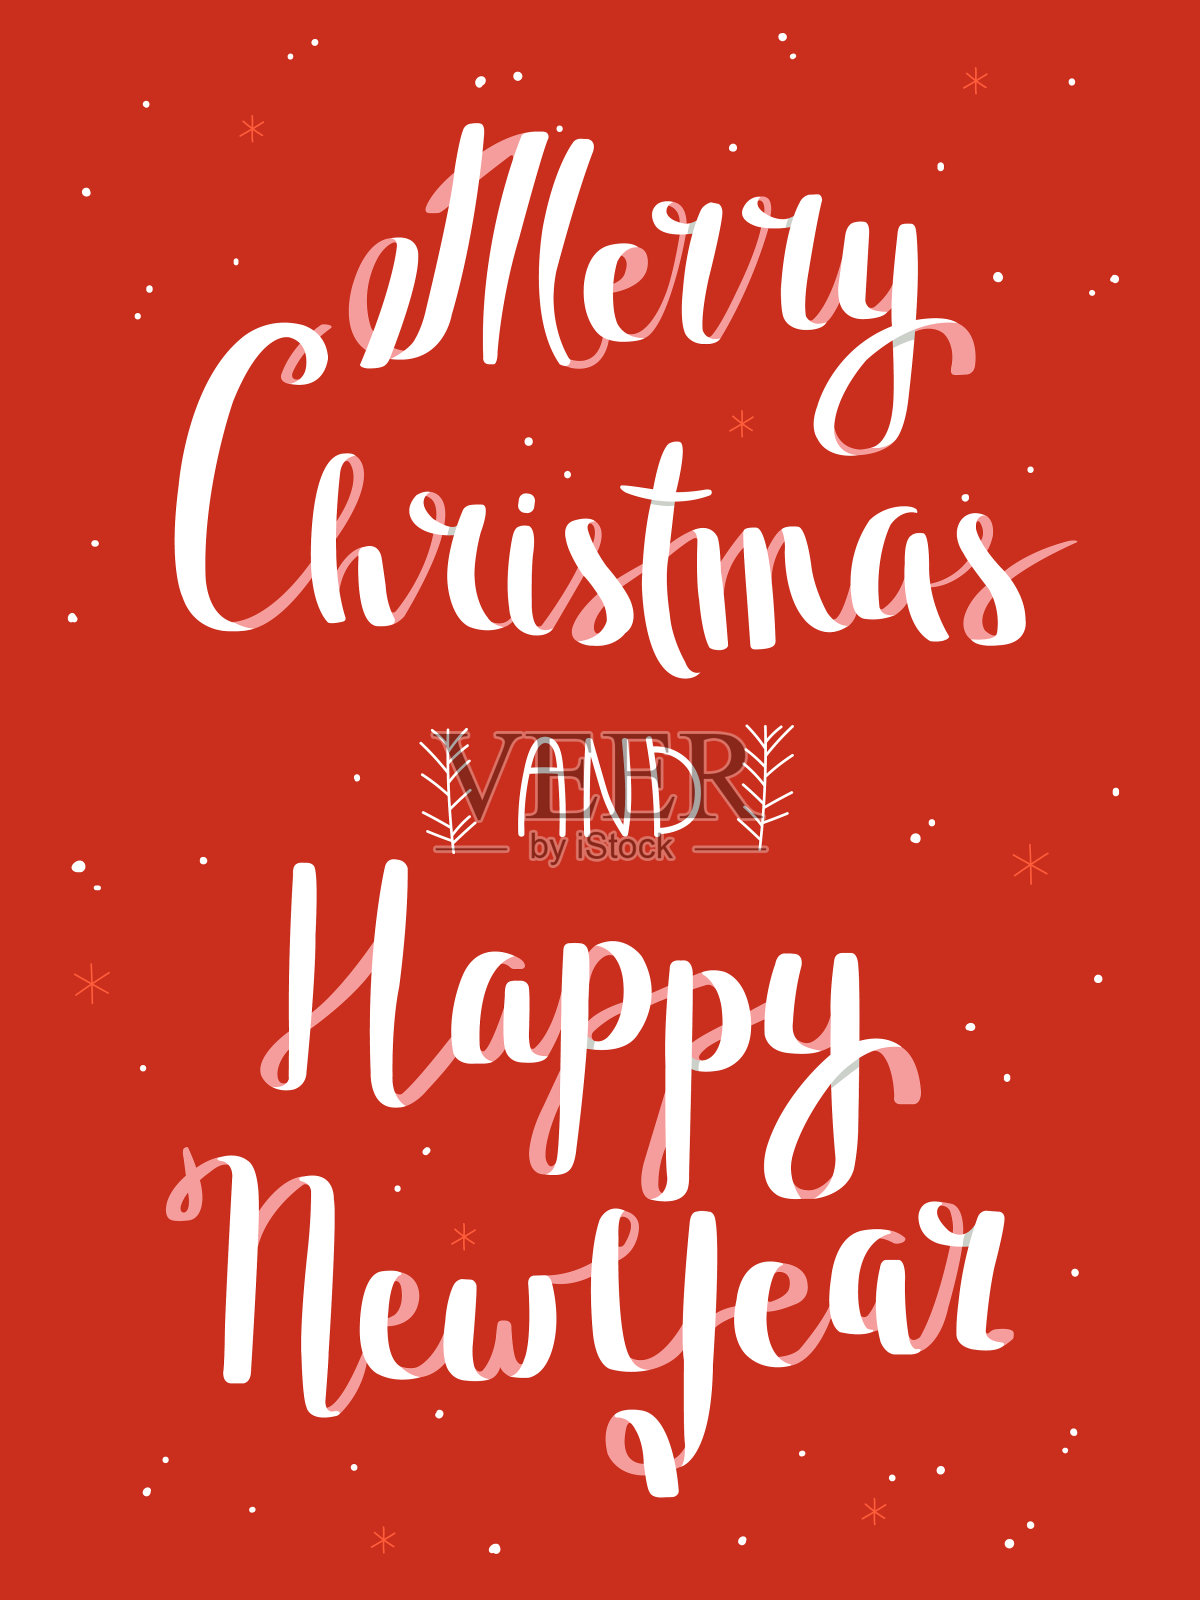 圣诞快乐及新年快乐海报(红色背景)设计模板素材